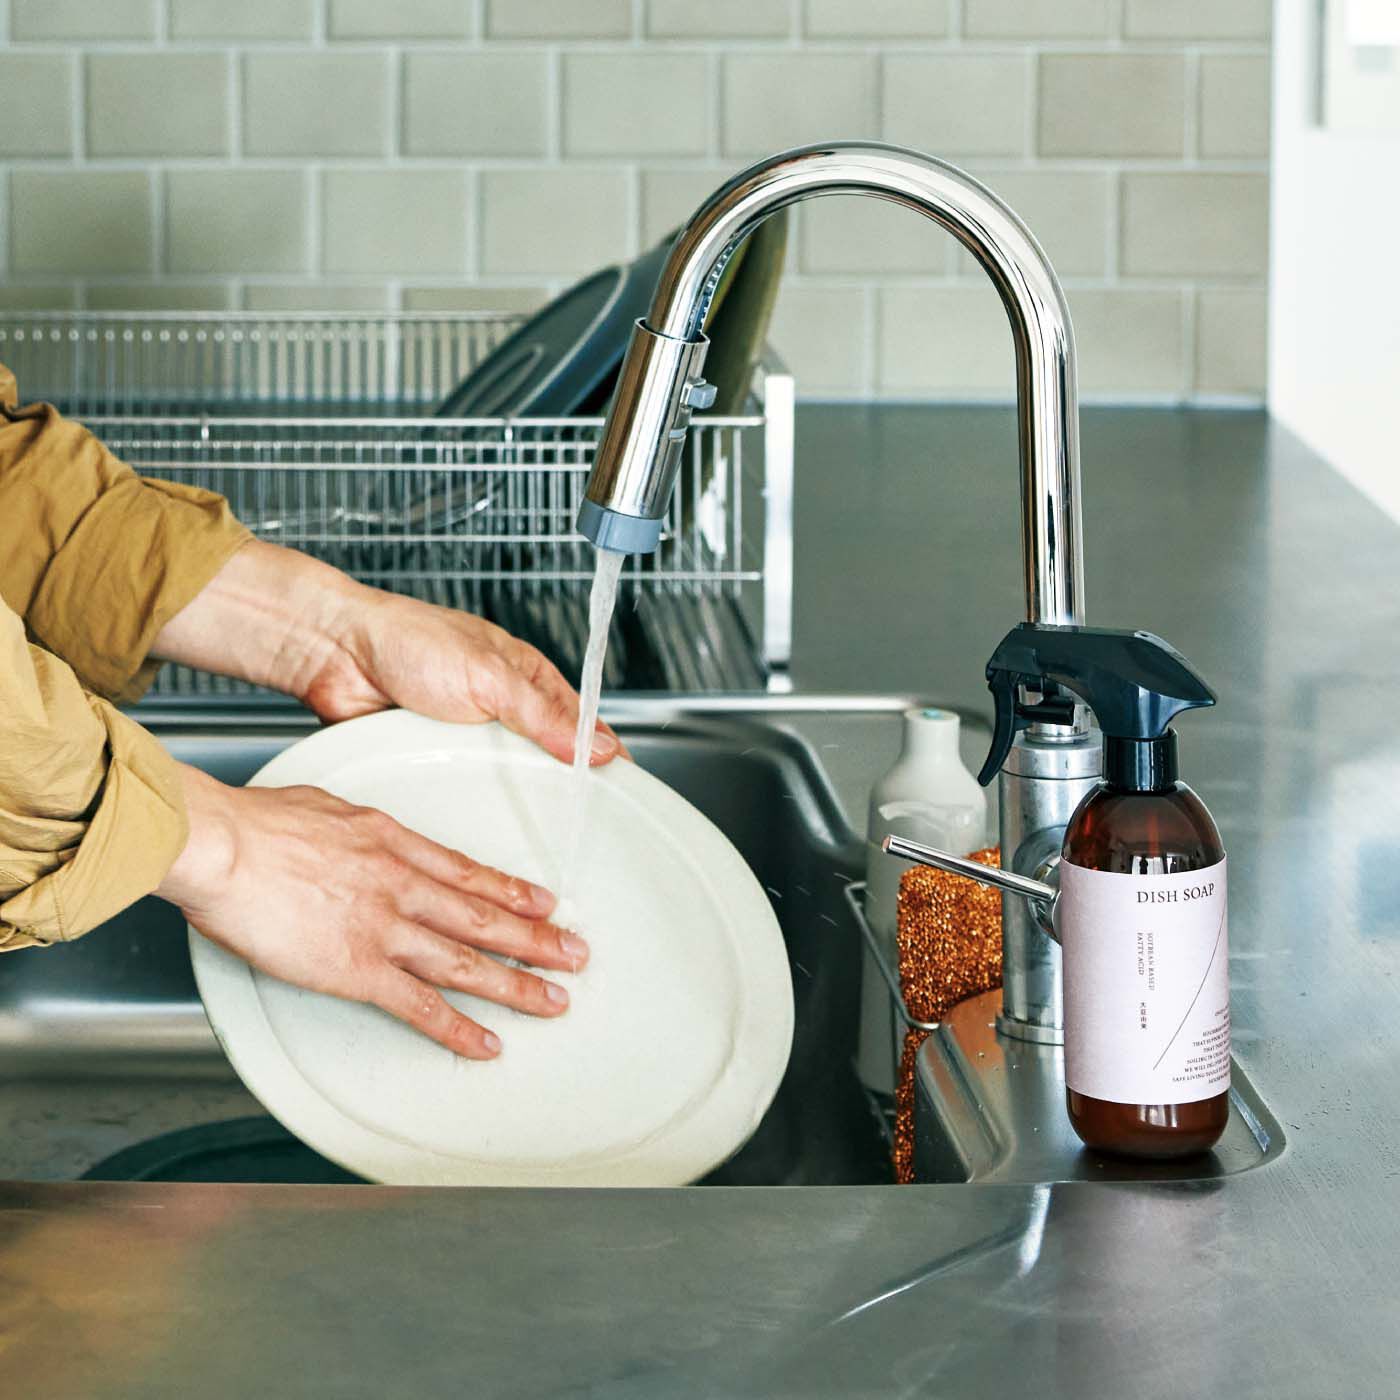 フェリシモの雑貨Kraso|1/d DISH SOAP 食器用洗剤の会|キッチンになじむディスペンサーのデザイン。